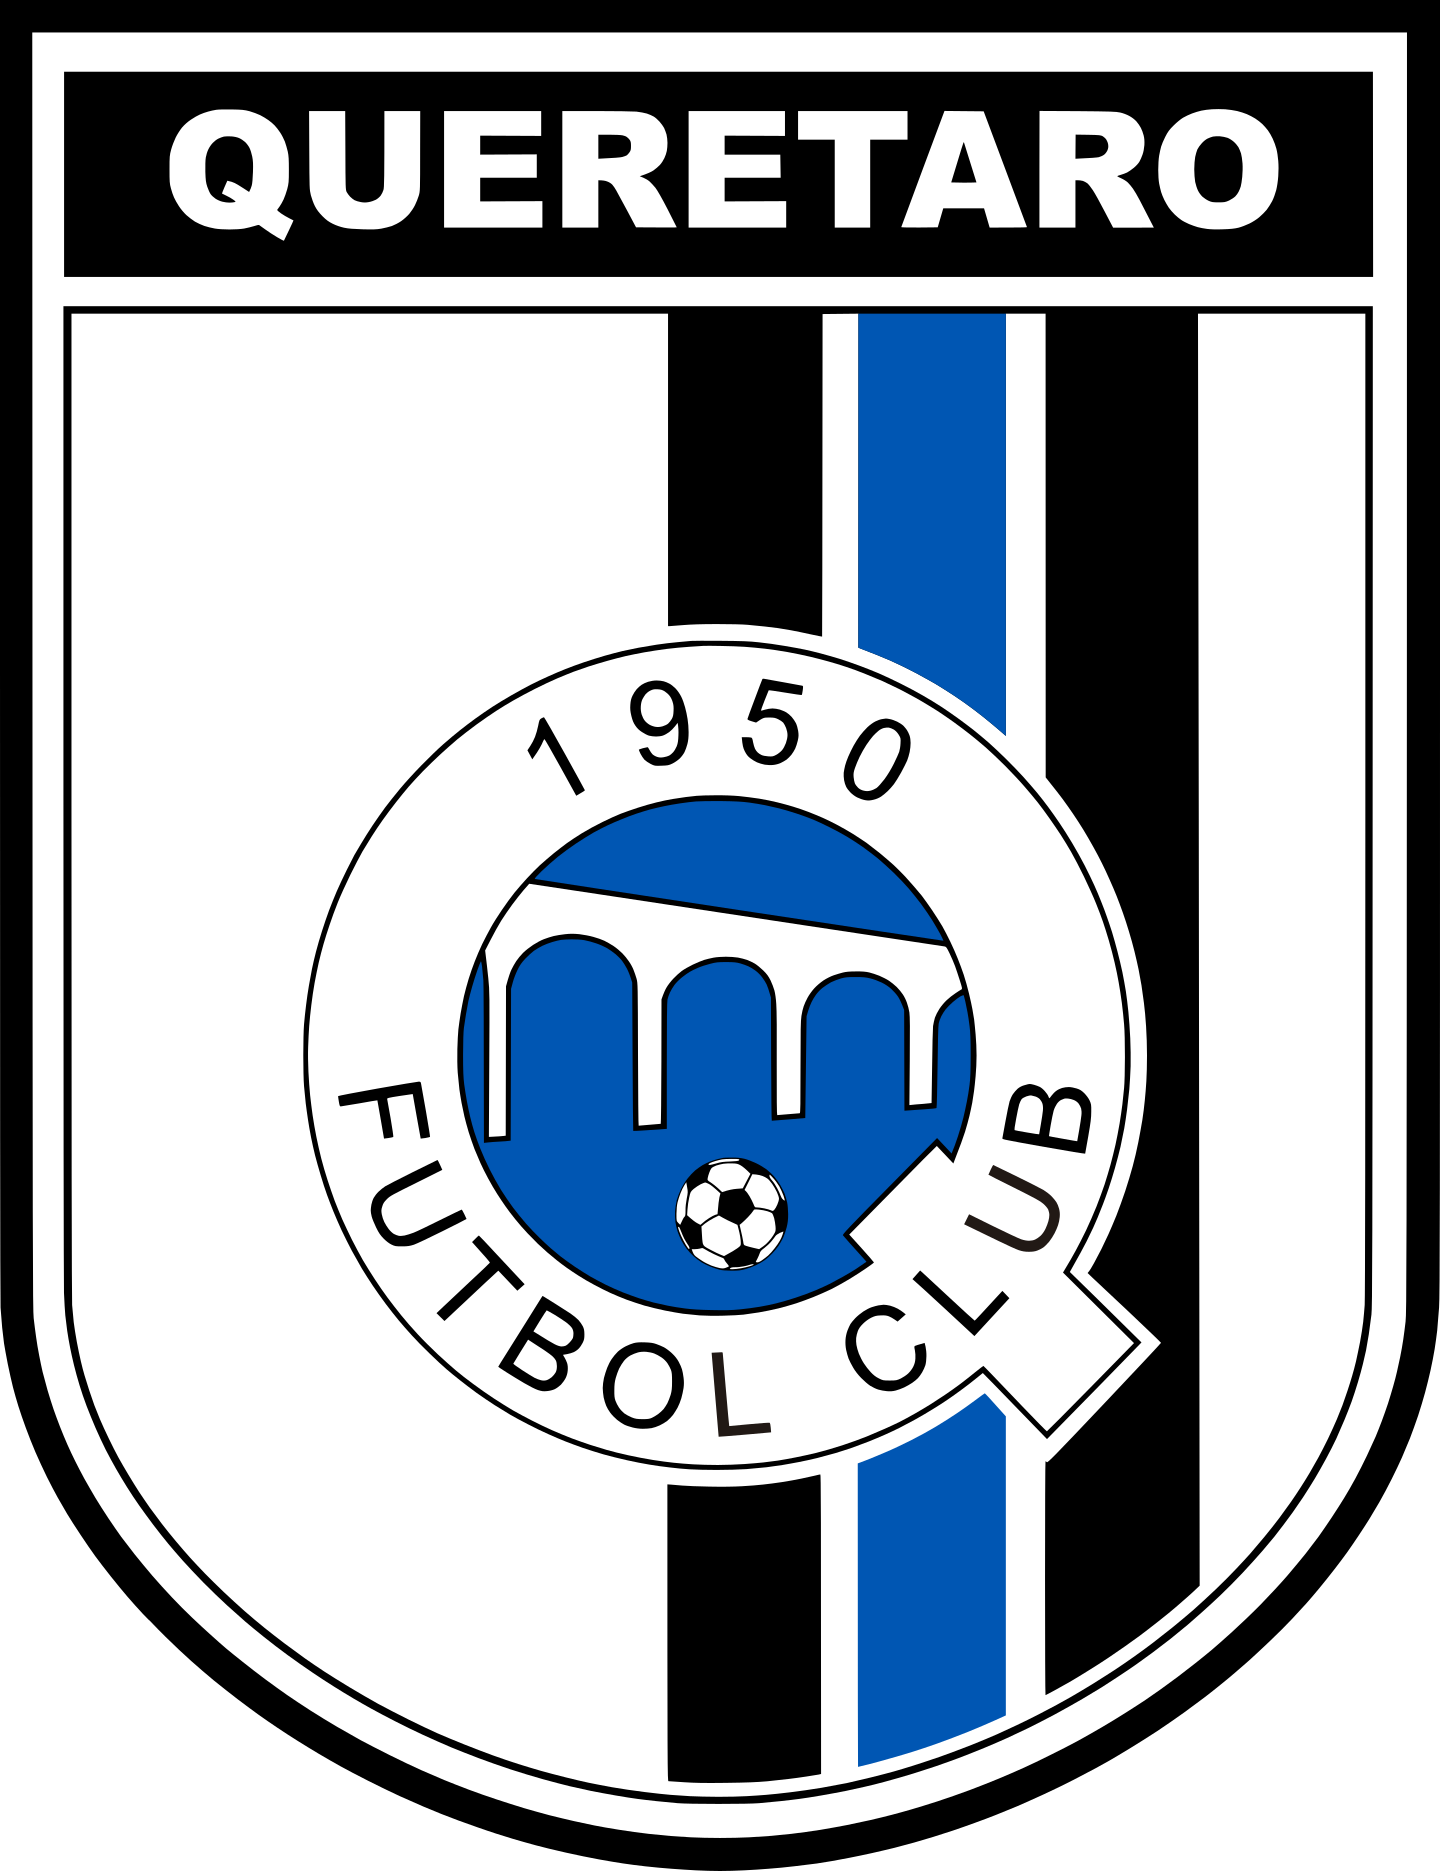 queretaro fc logo 2 - Querétaro FC Logo